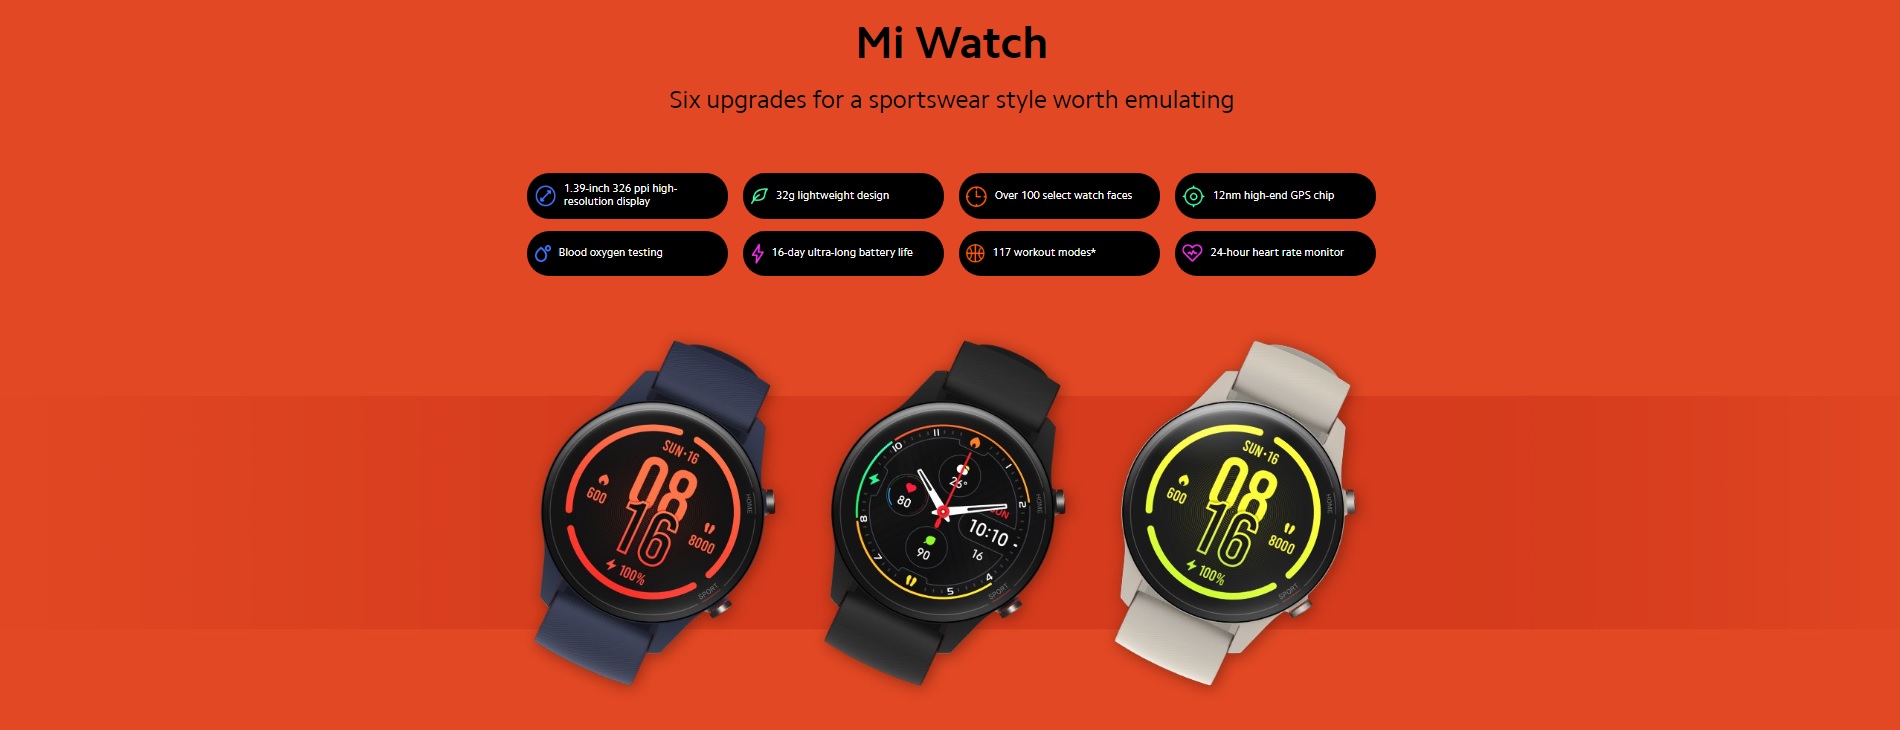 Xiaomi Mi Watch smartwatch